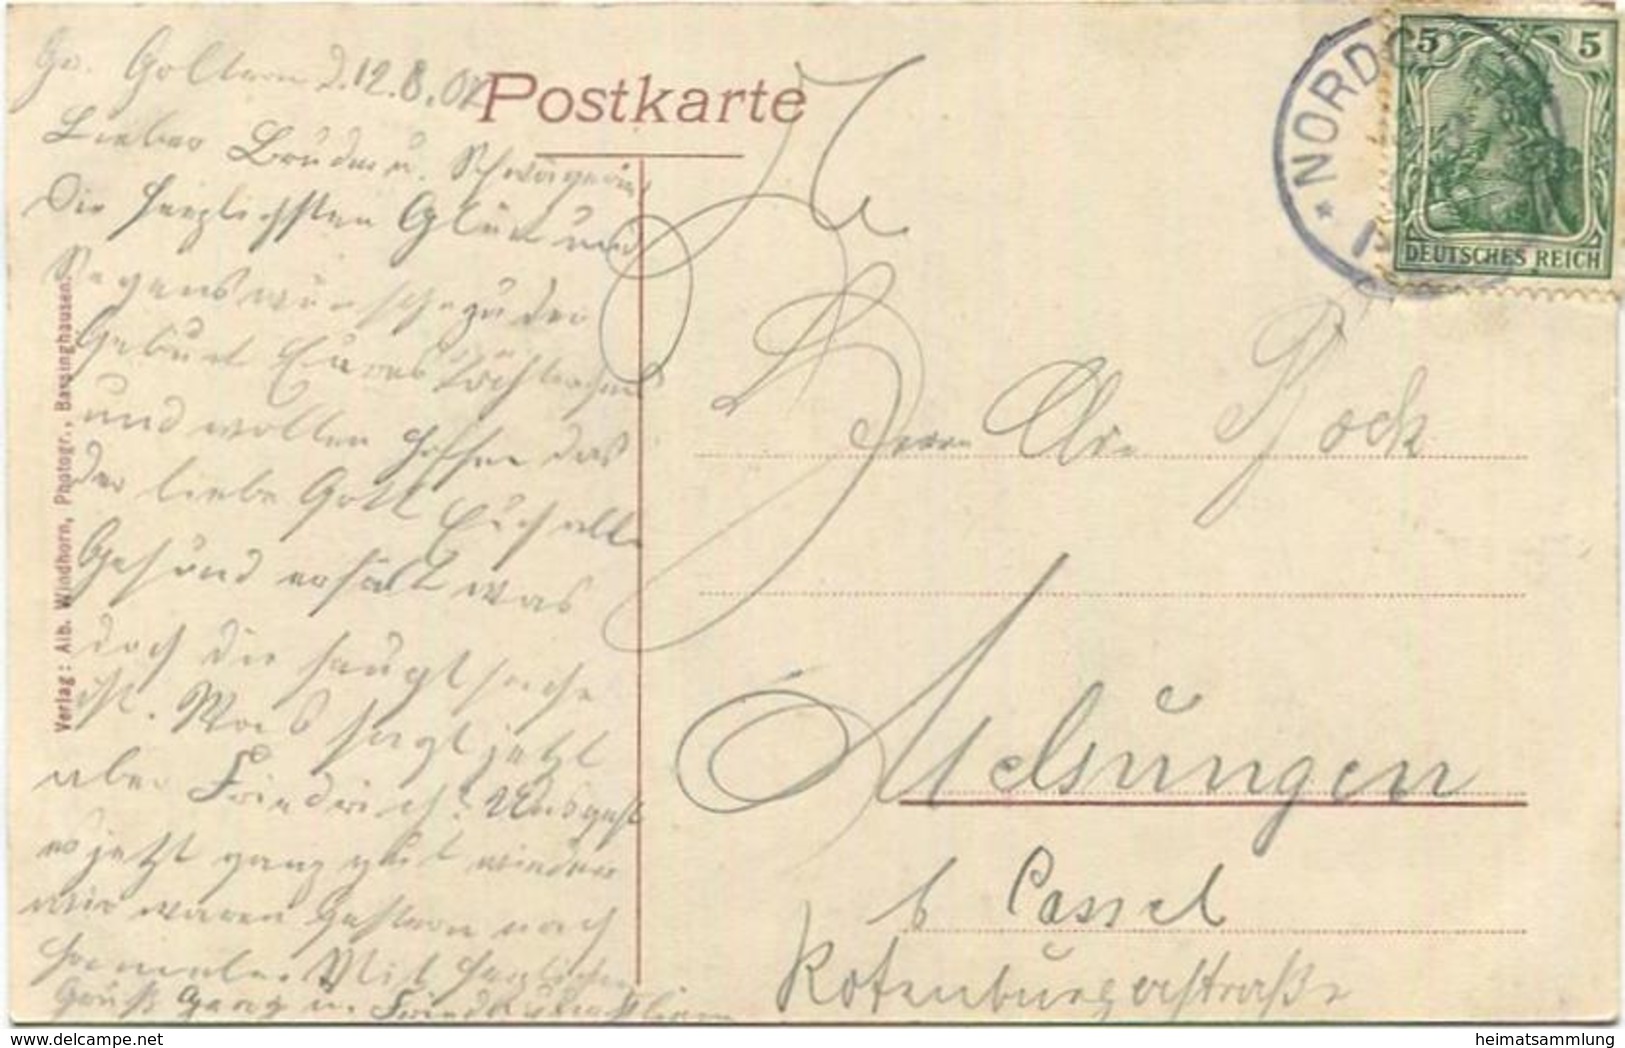 Barsinghausen - Bahnhofstrasse - Verlag Albert Windhorn Barsinghausen - Gel. 1907 - Barsinghausen